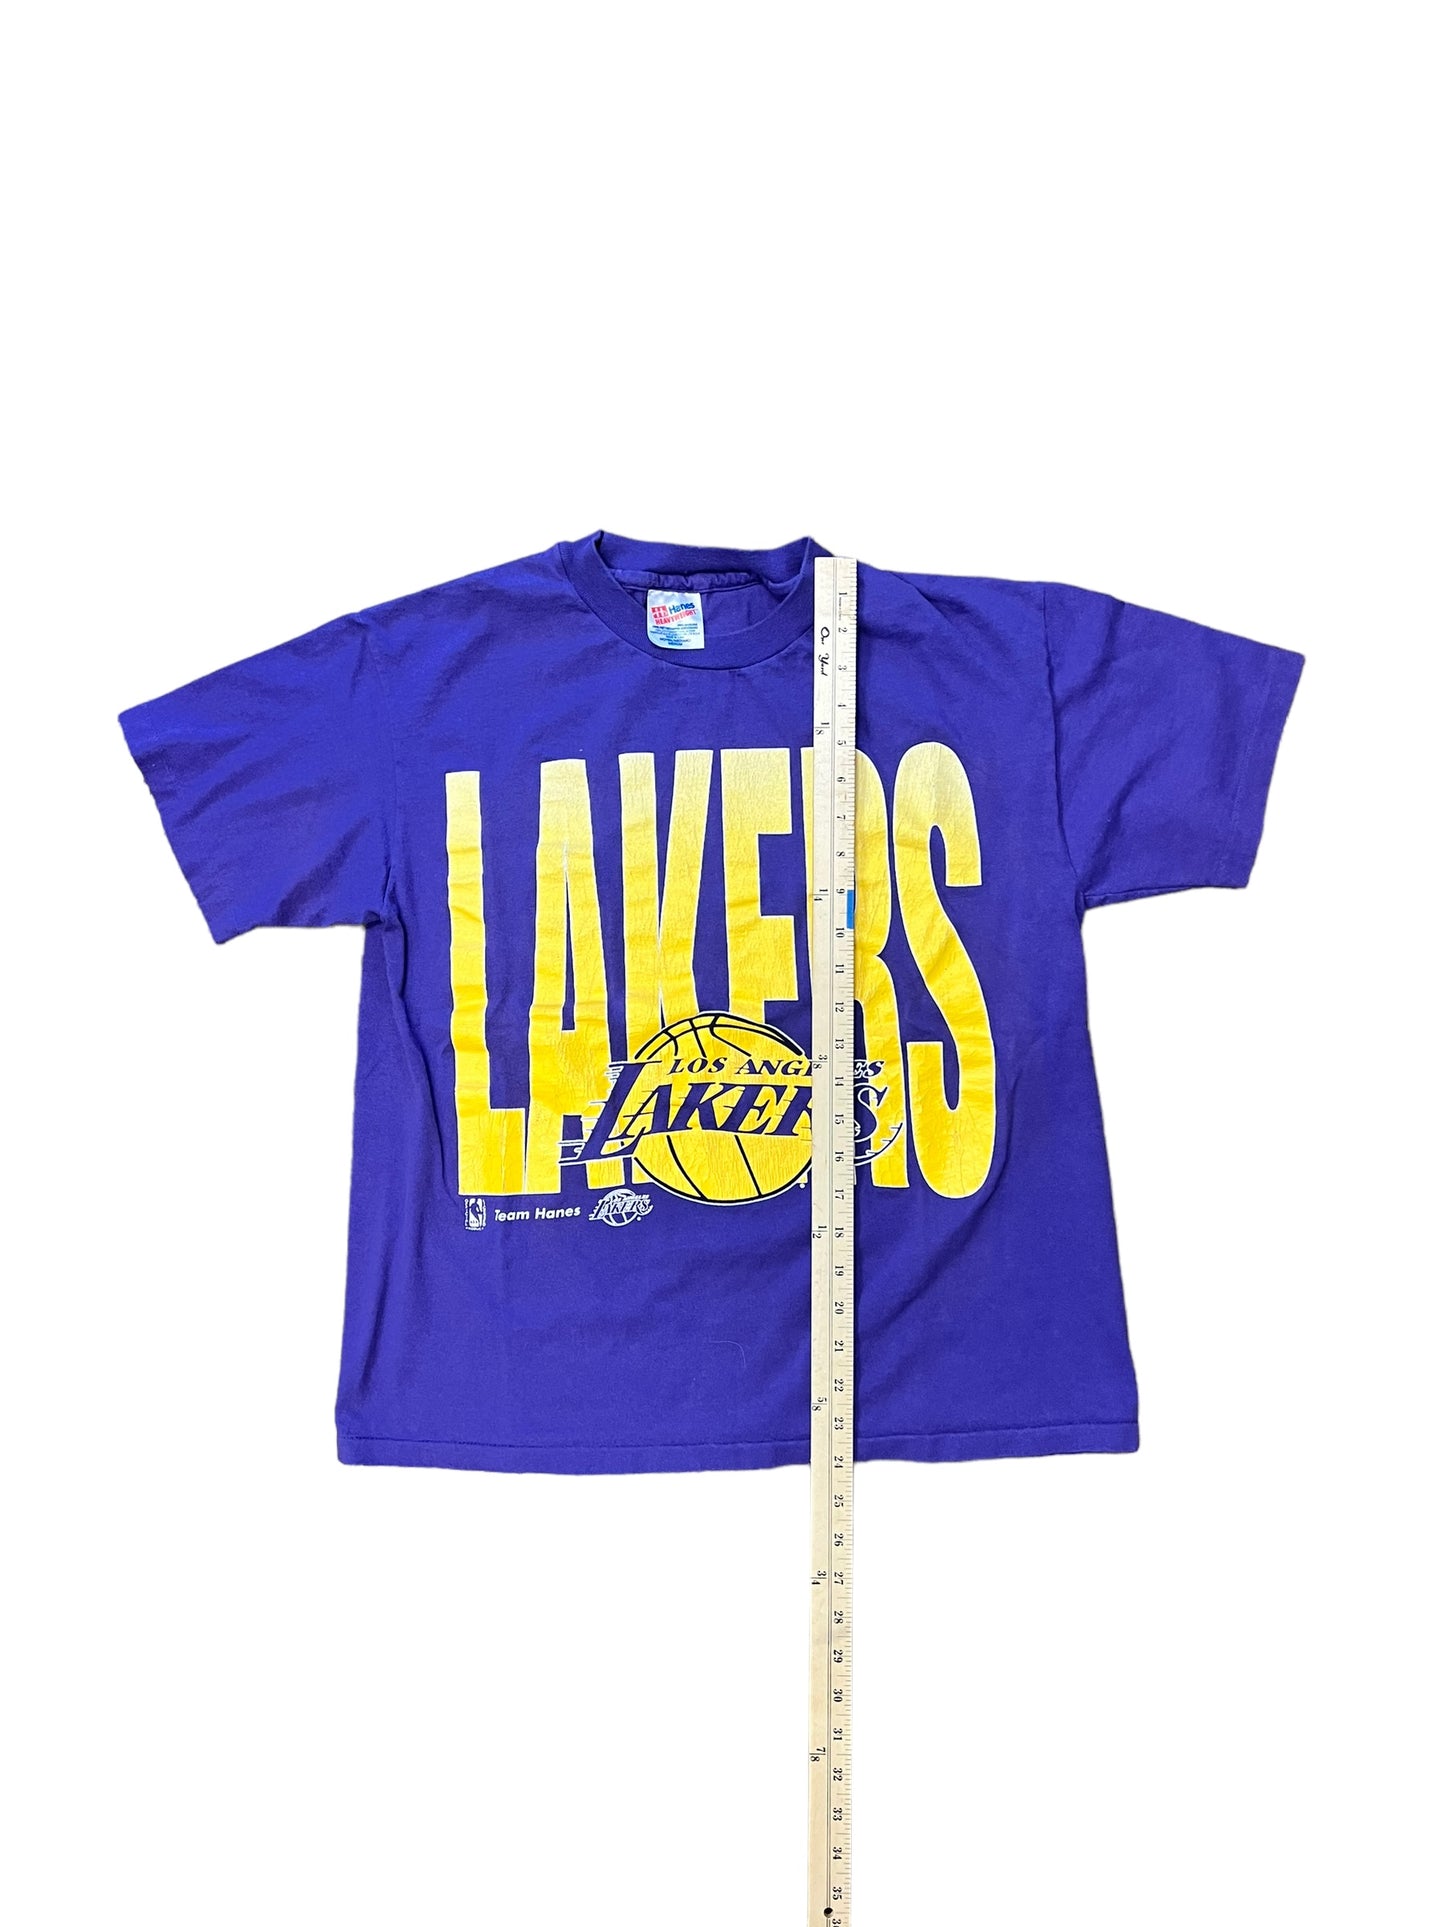 Vintage LA Lakers Tee - Medium